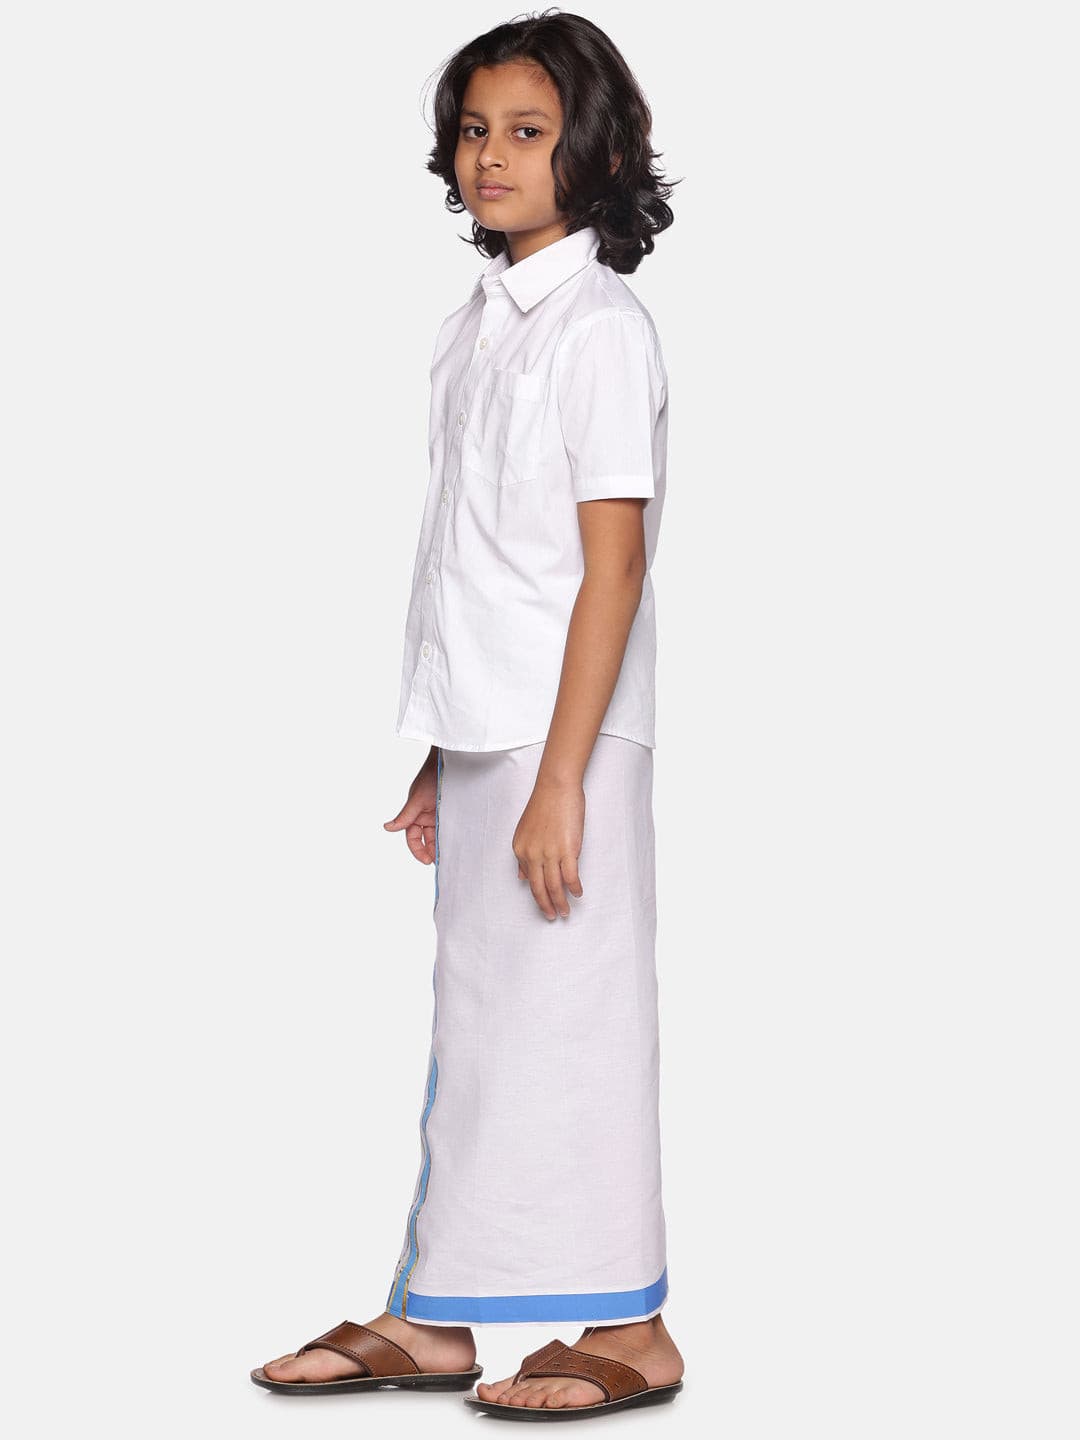 Boys White Colour Cotton Readymade Shirt With Dhoti Set